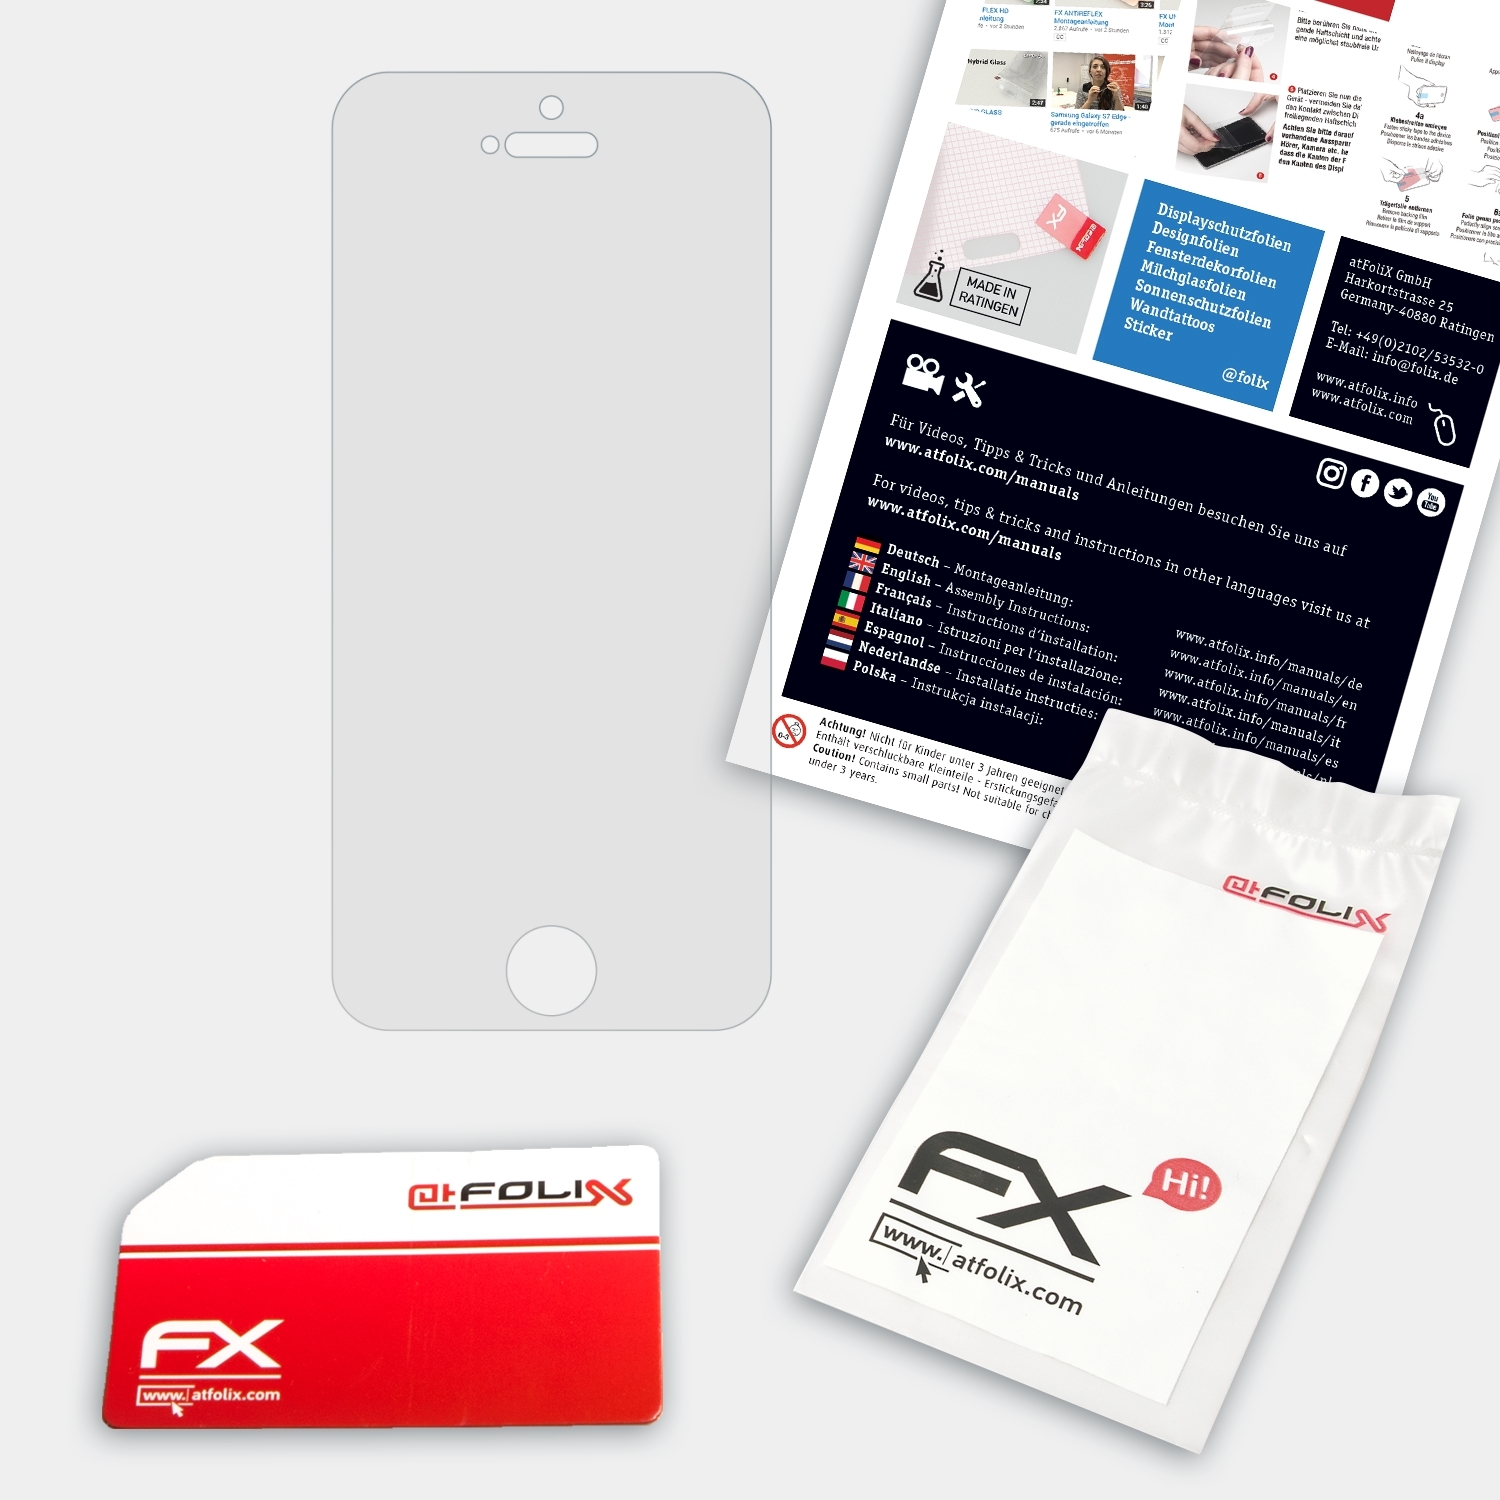 ATFOLIX FX-Hybrid-Glass 5C) iPhone Apple Schutzglas(für